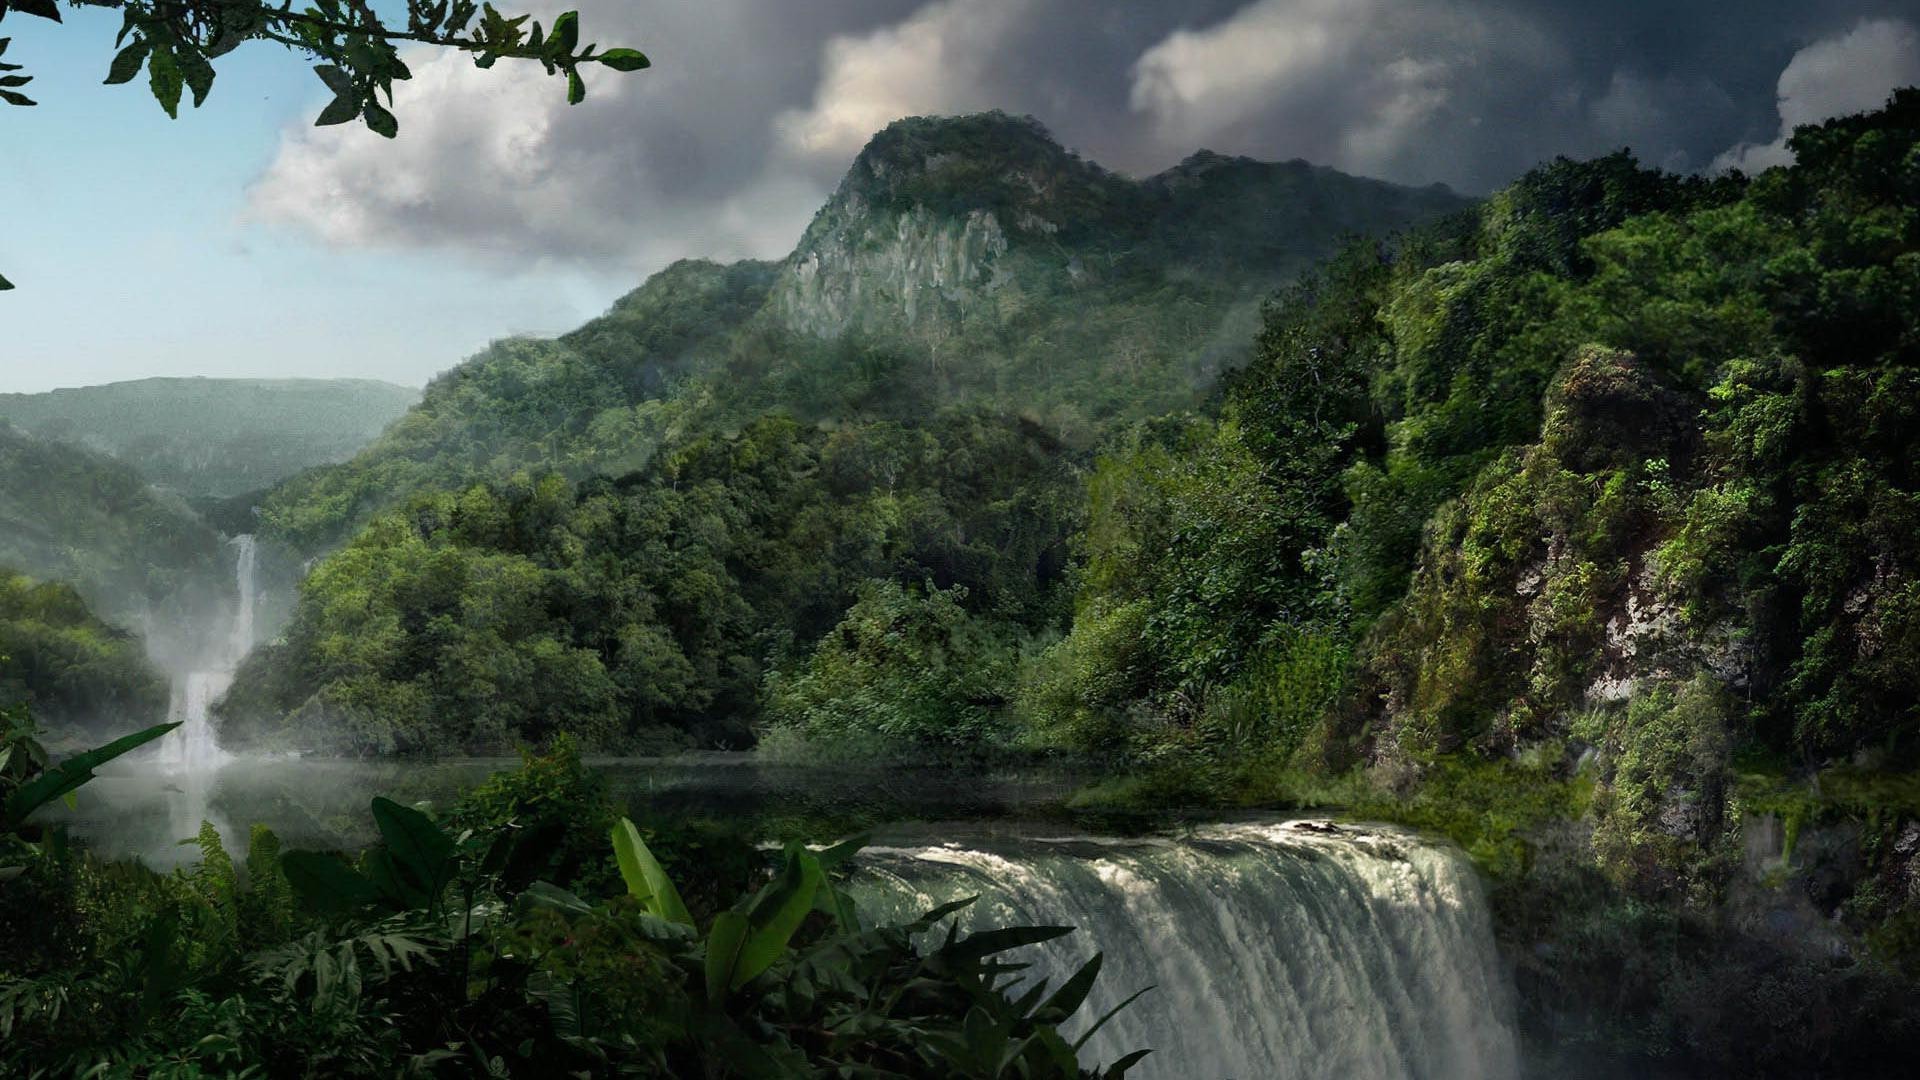 водопады воды водопад река природа древесины путешествия горы пейзаж тропический лес дерево на открытом воздухе рок живописный поток лист небо пышные долина